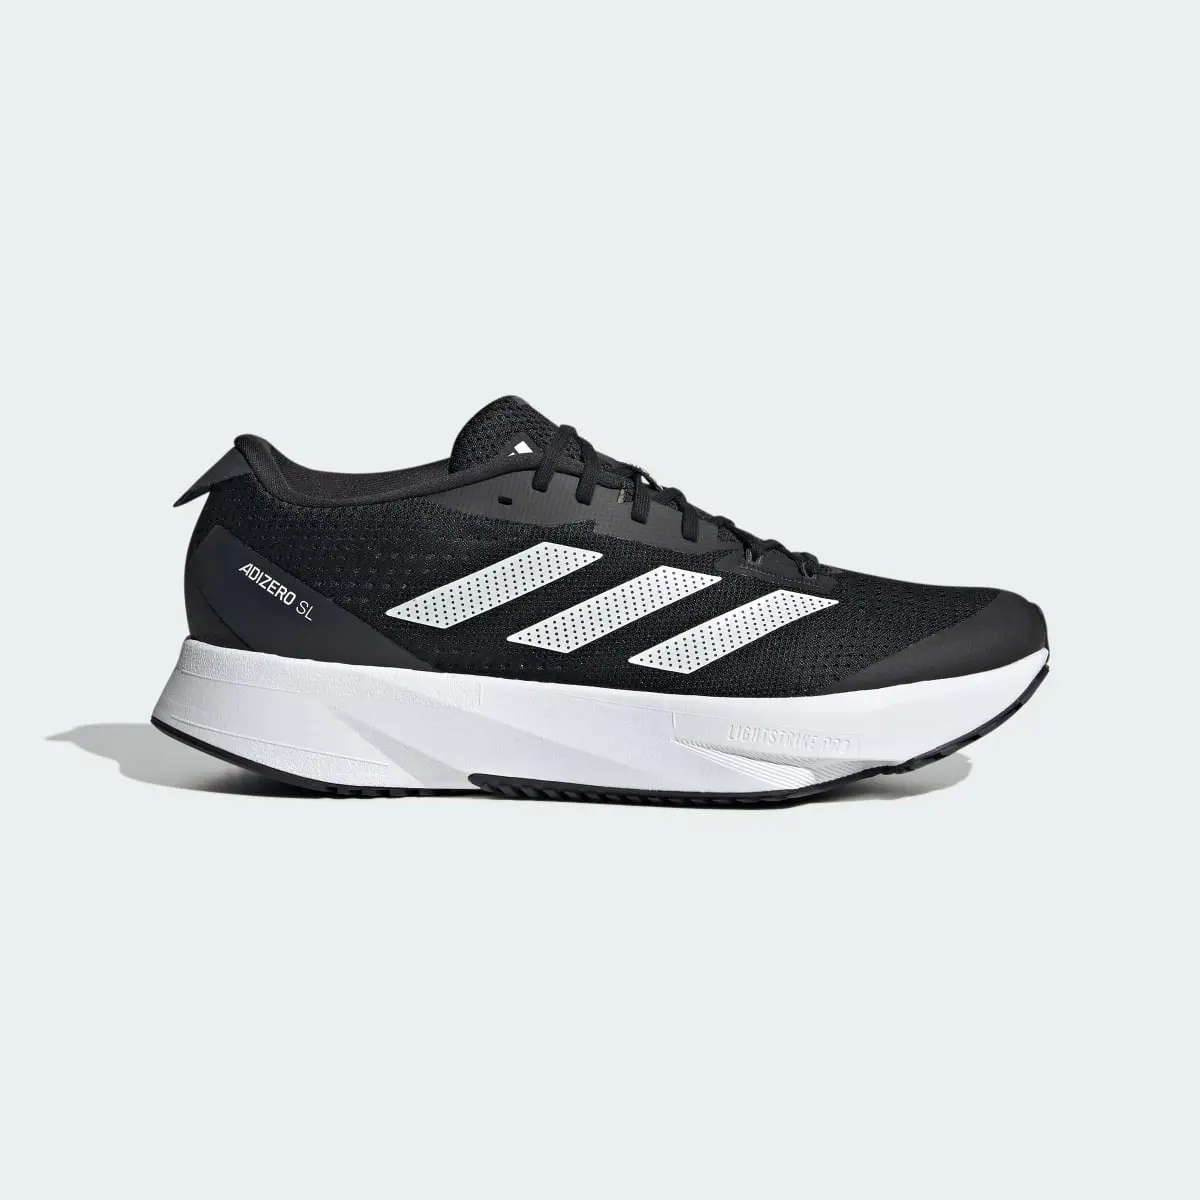 Adidas Adizero SL Running Shoes. 2